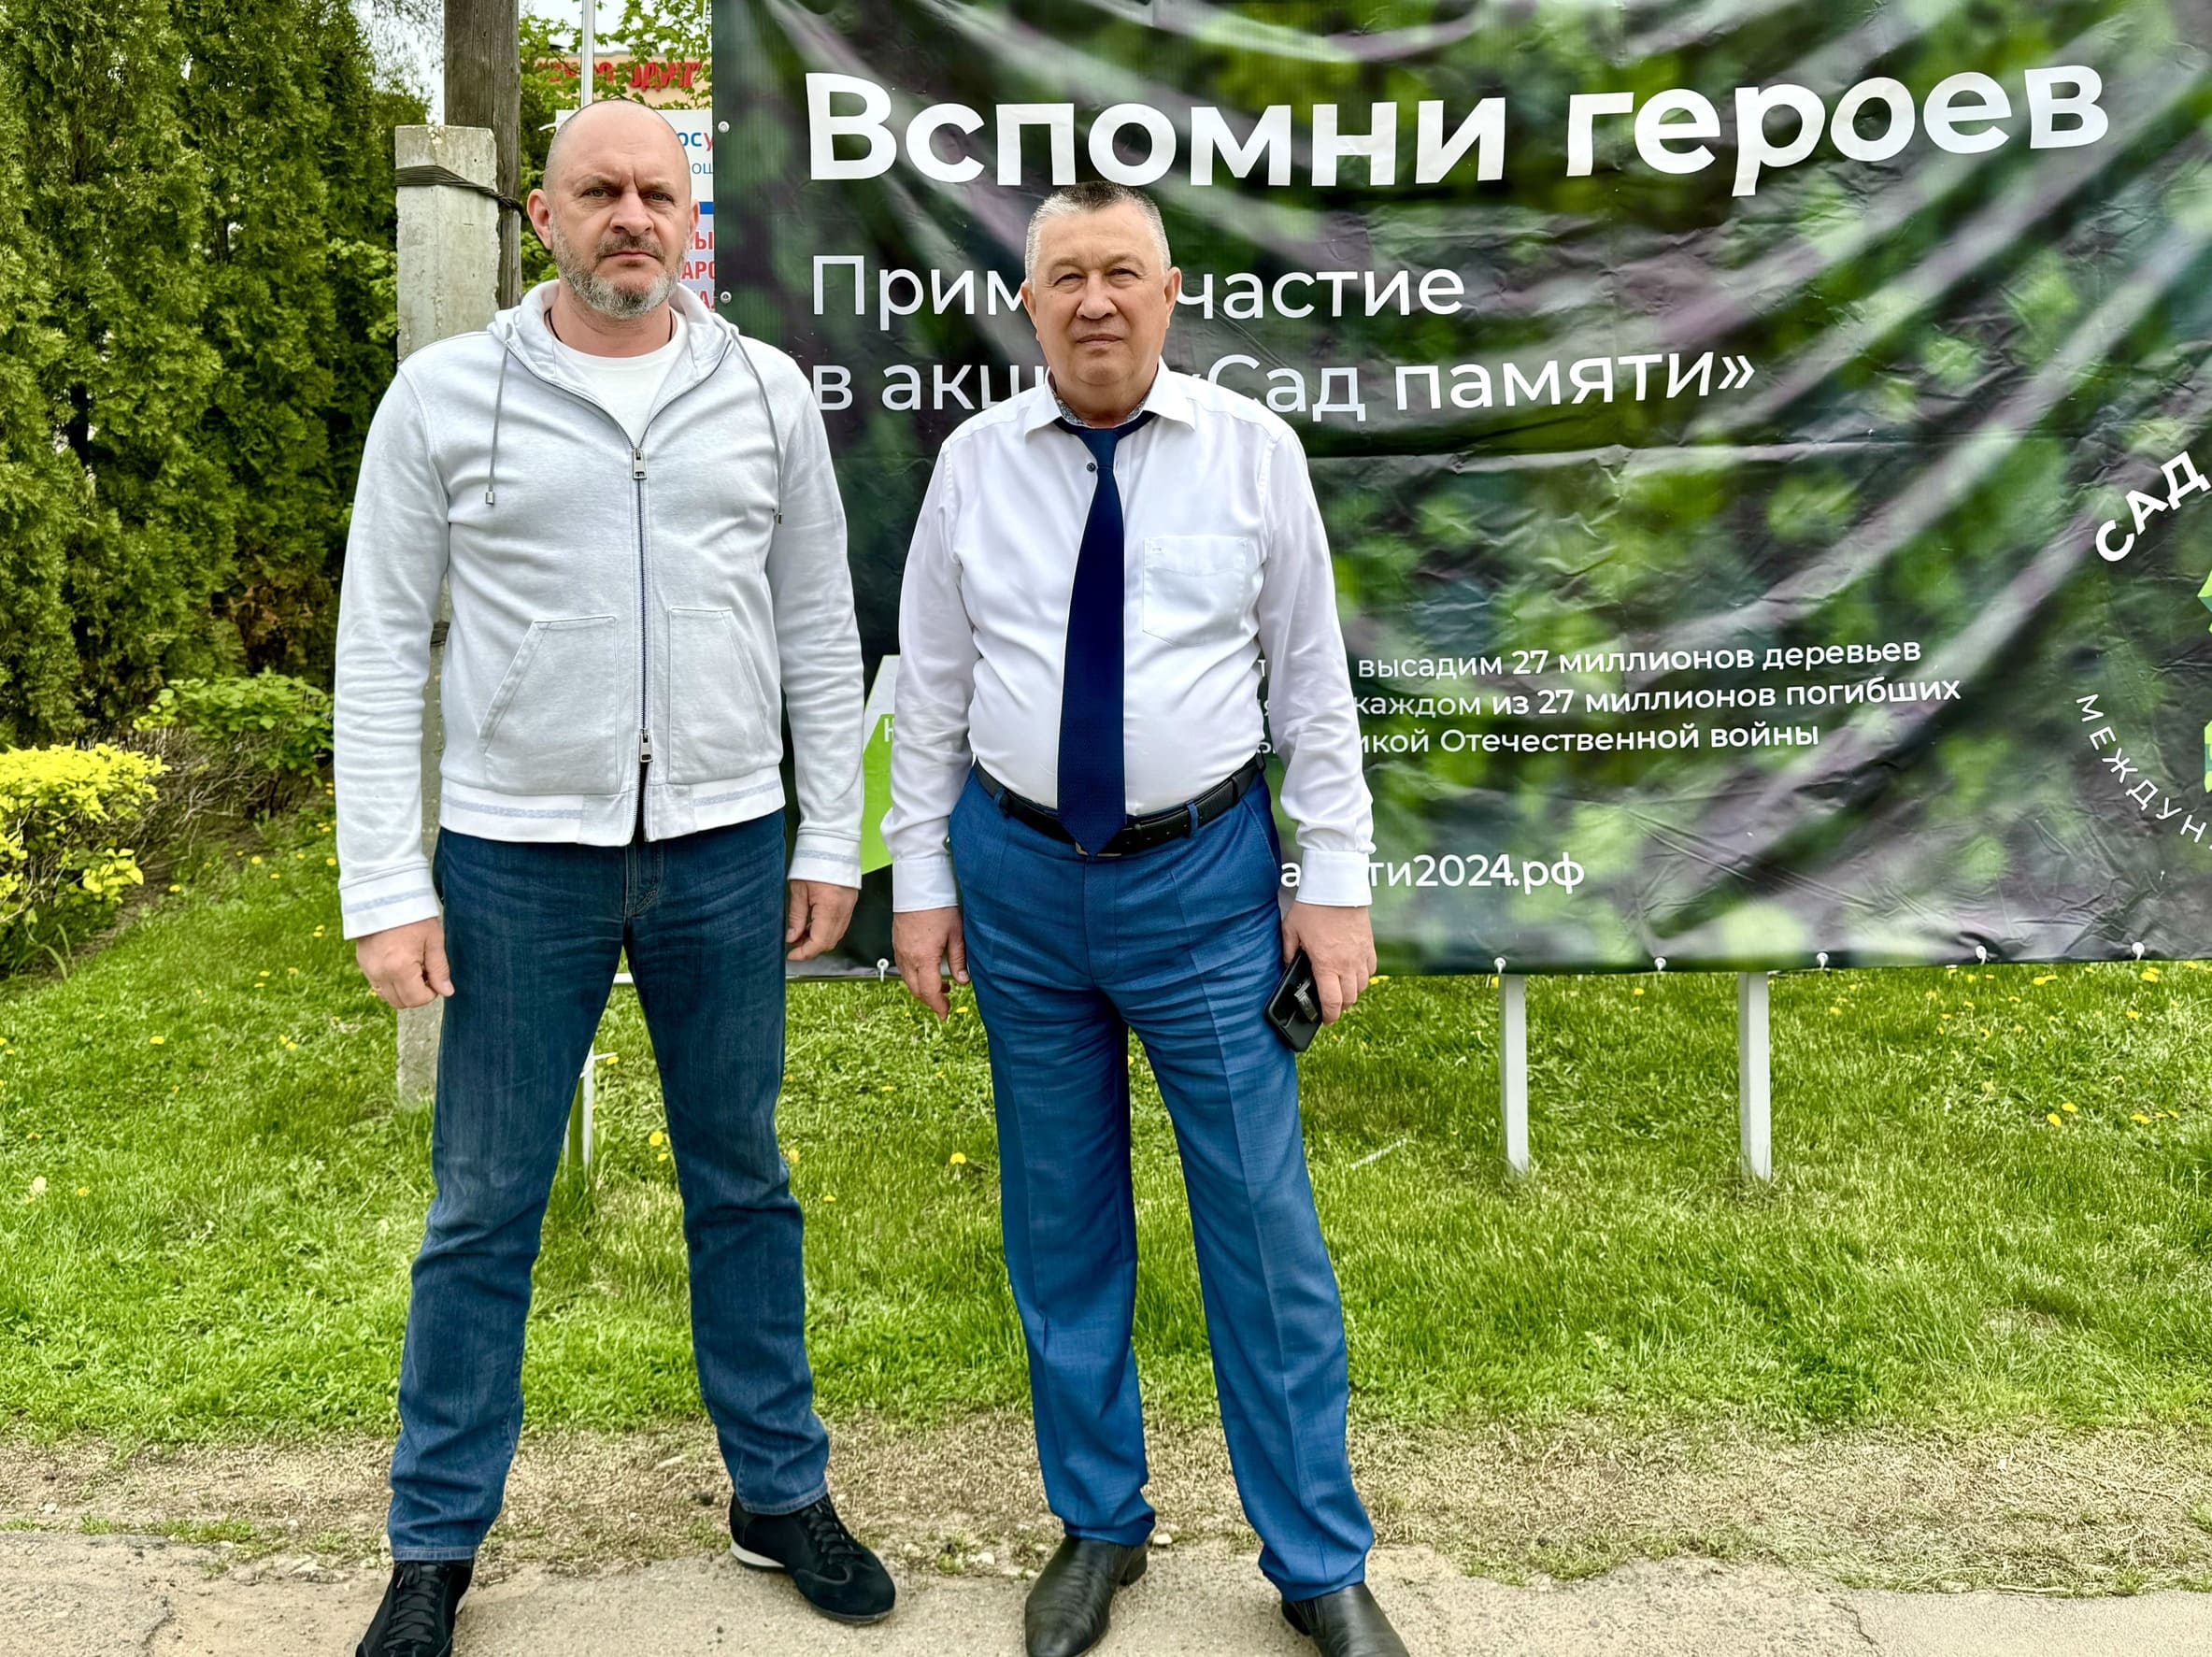 Российское экологическое общество поддержало акцию «Сад памяти» в Саратовской области